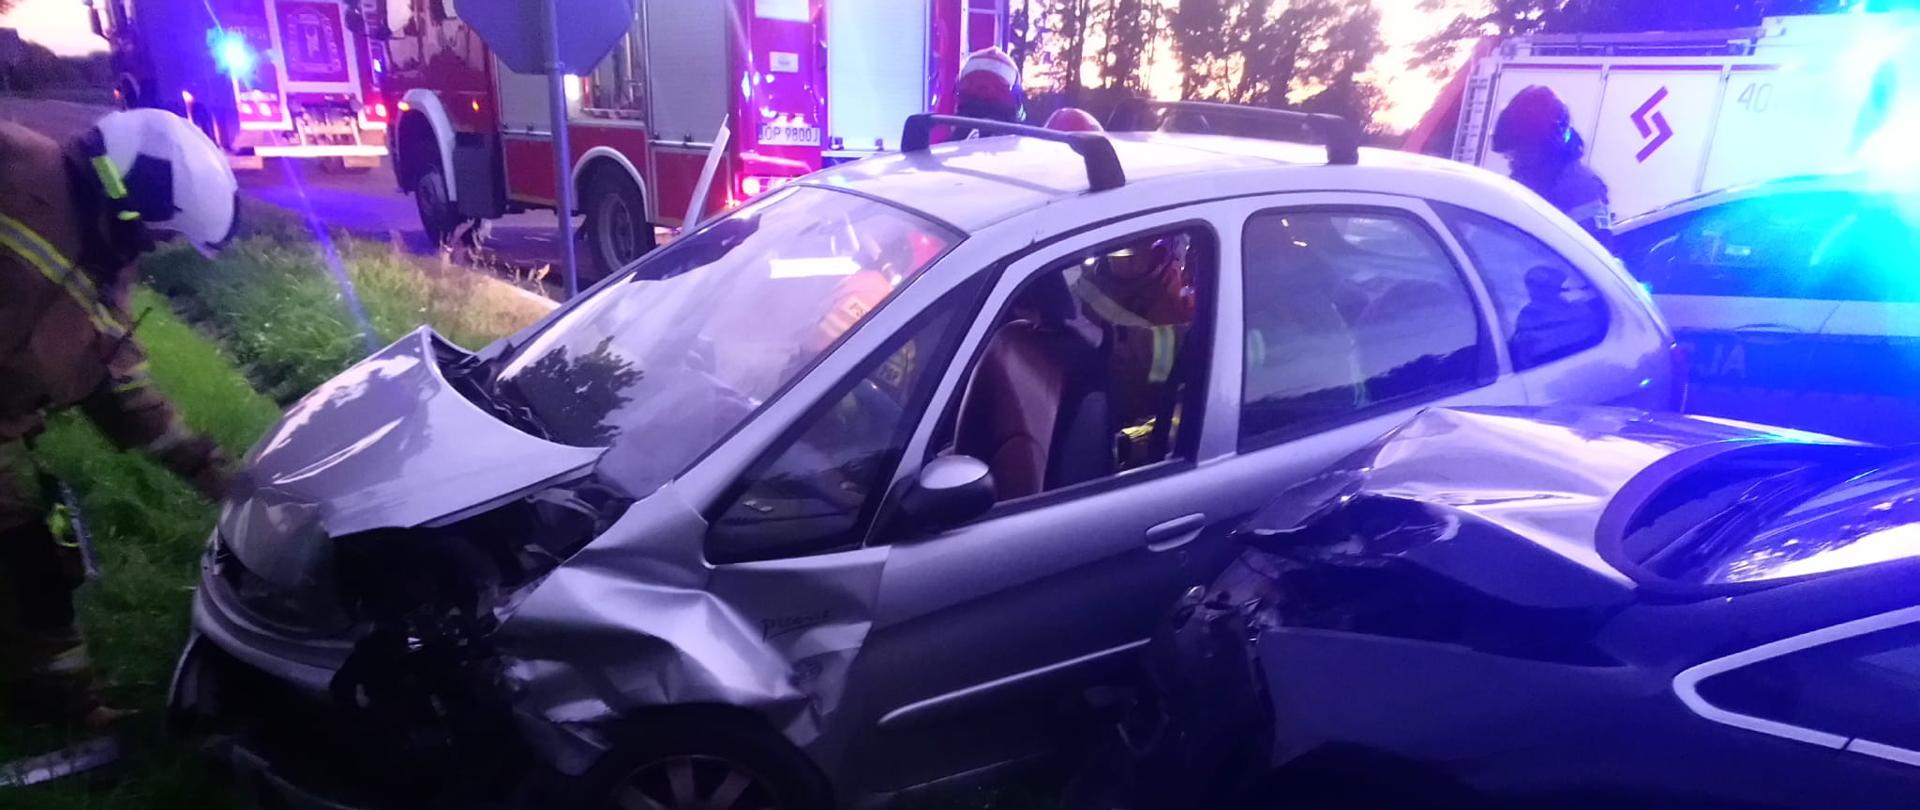 Wypadek samochodowy na drodze powiatowej nr. 1179O w pobliżu Gierszowic - zdjęcie przedstawia 2 samochody osobowe uczestniczące w wypadku. W tle widać pojazd pożarniczy.